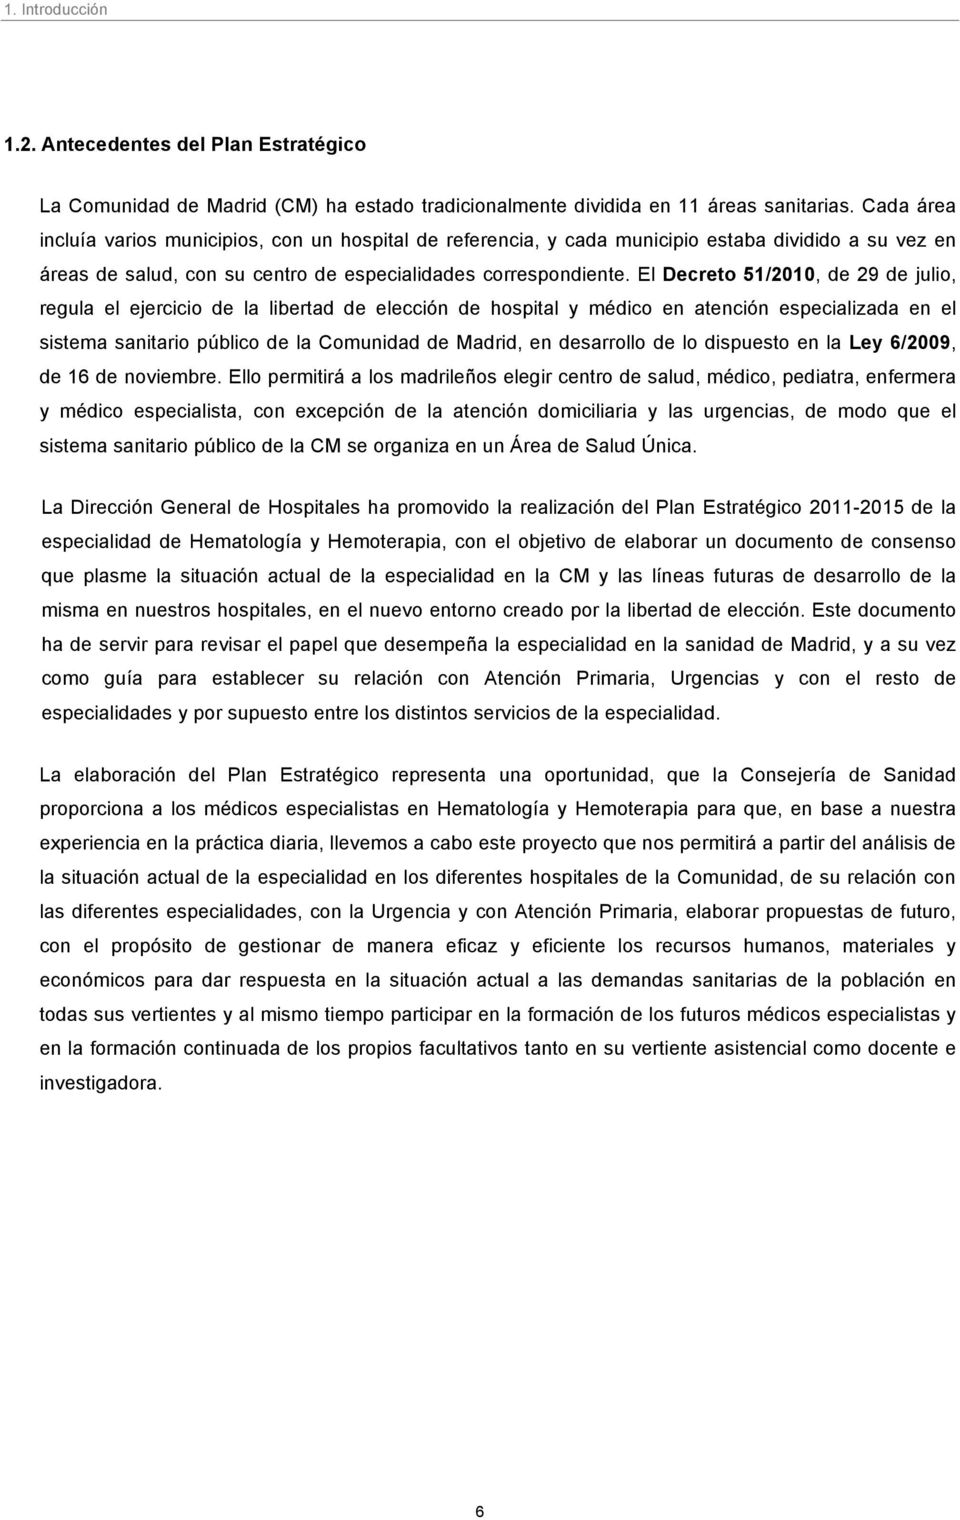 El Decreto 51/2010, de 29 de julio, regula el ejercicio de la libertad de elección de hospital y médico en atención especializada en el sistema sanitario público de la Comunidad de Madrid, en